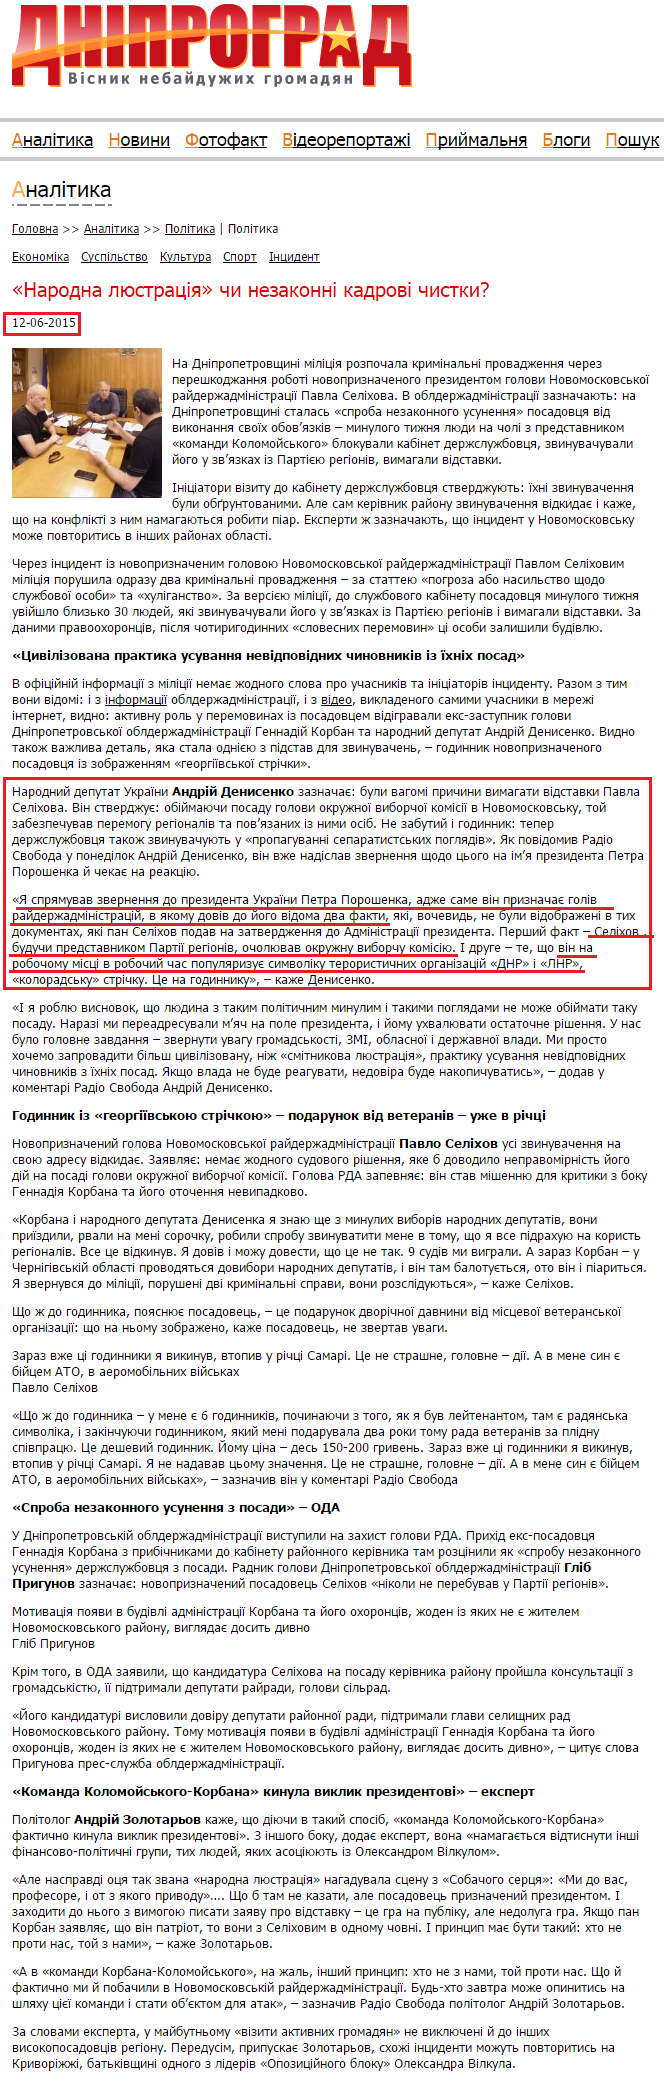 http://dniprograd.org/ua/articles/politics/4187